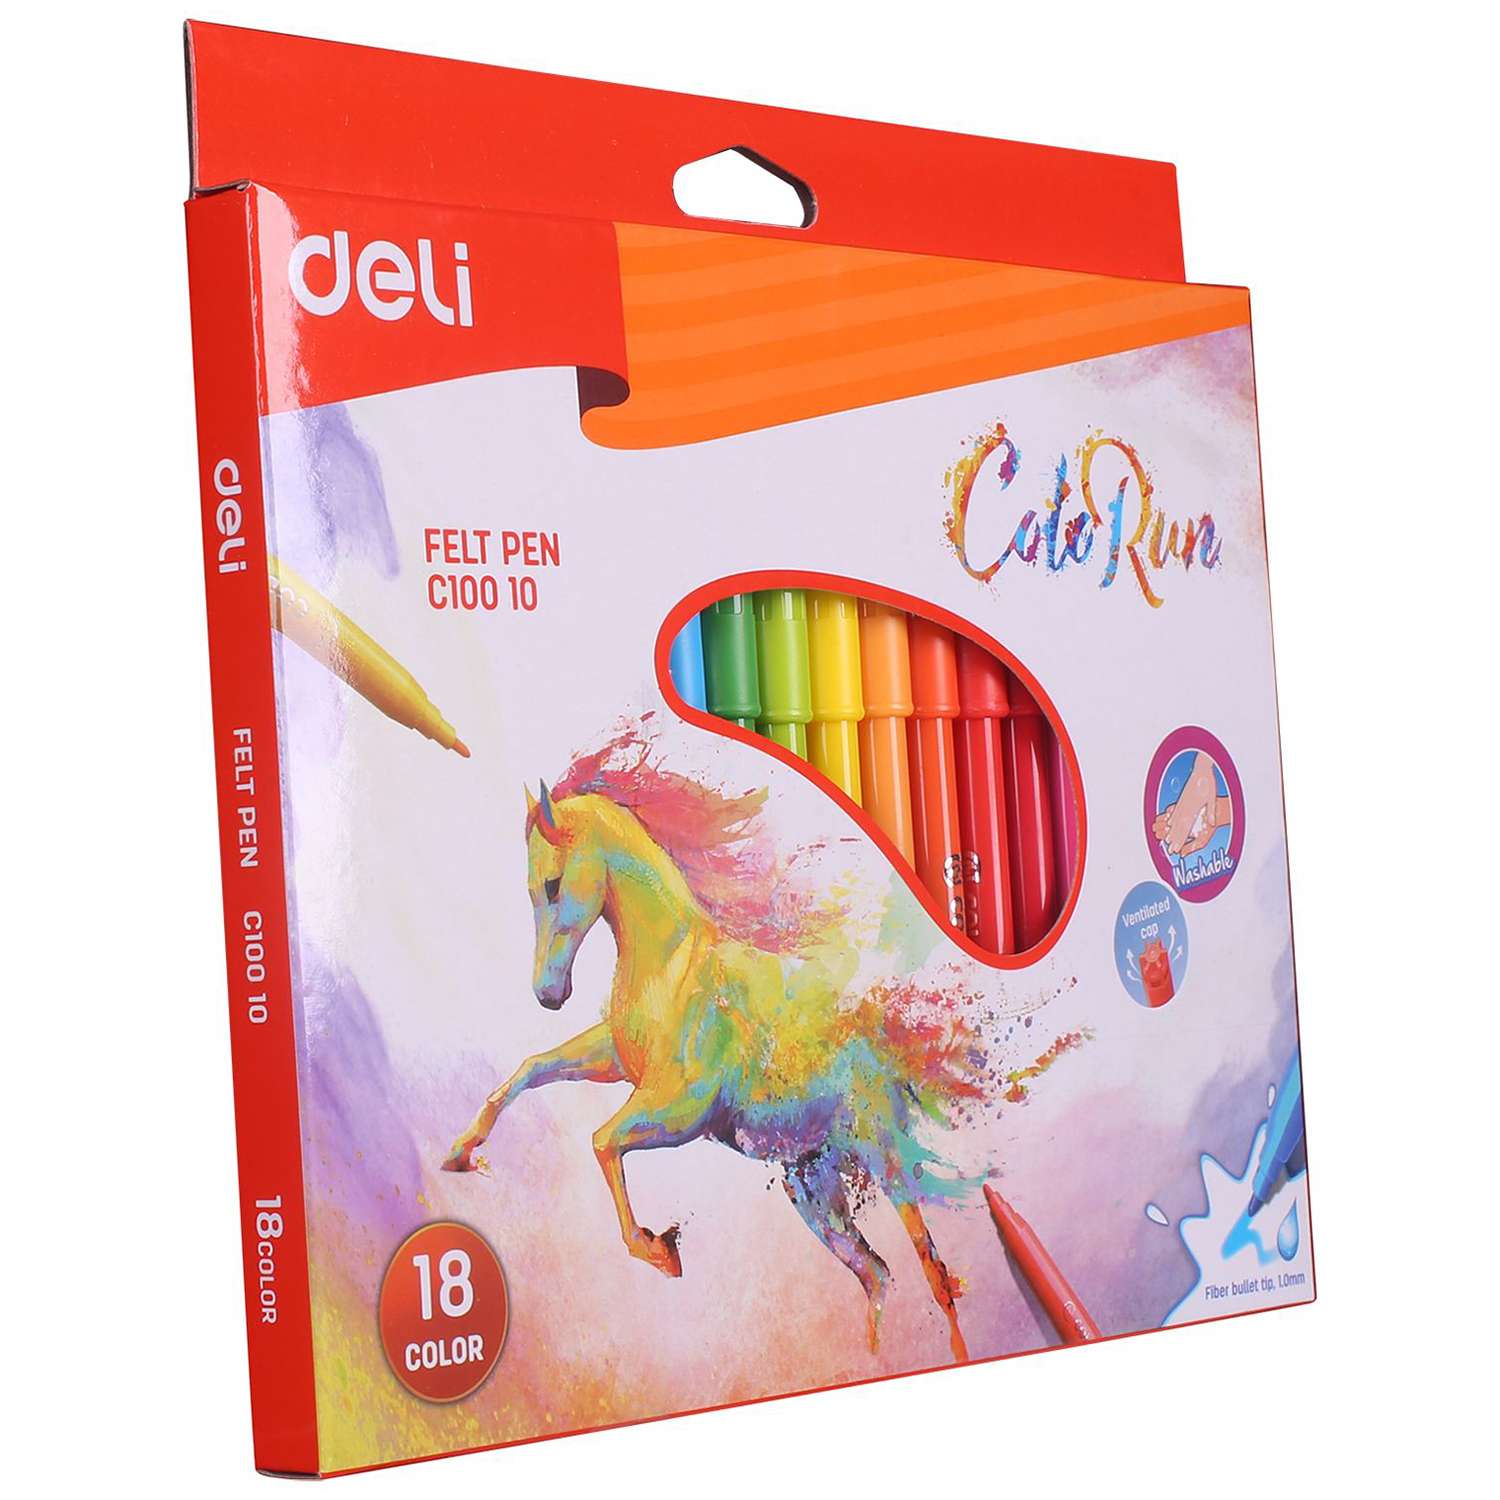 Фломастеры Deli ColoRun 18цветов EC10010 - фото 2